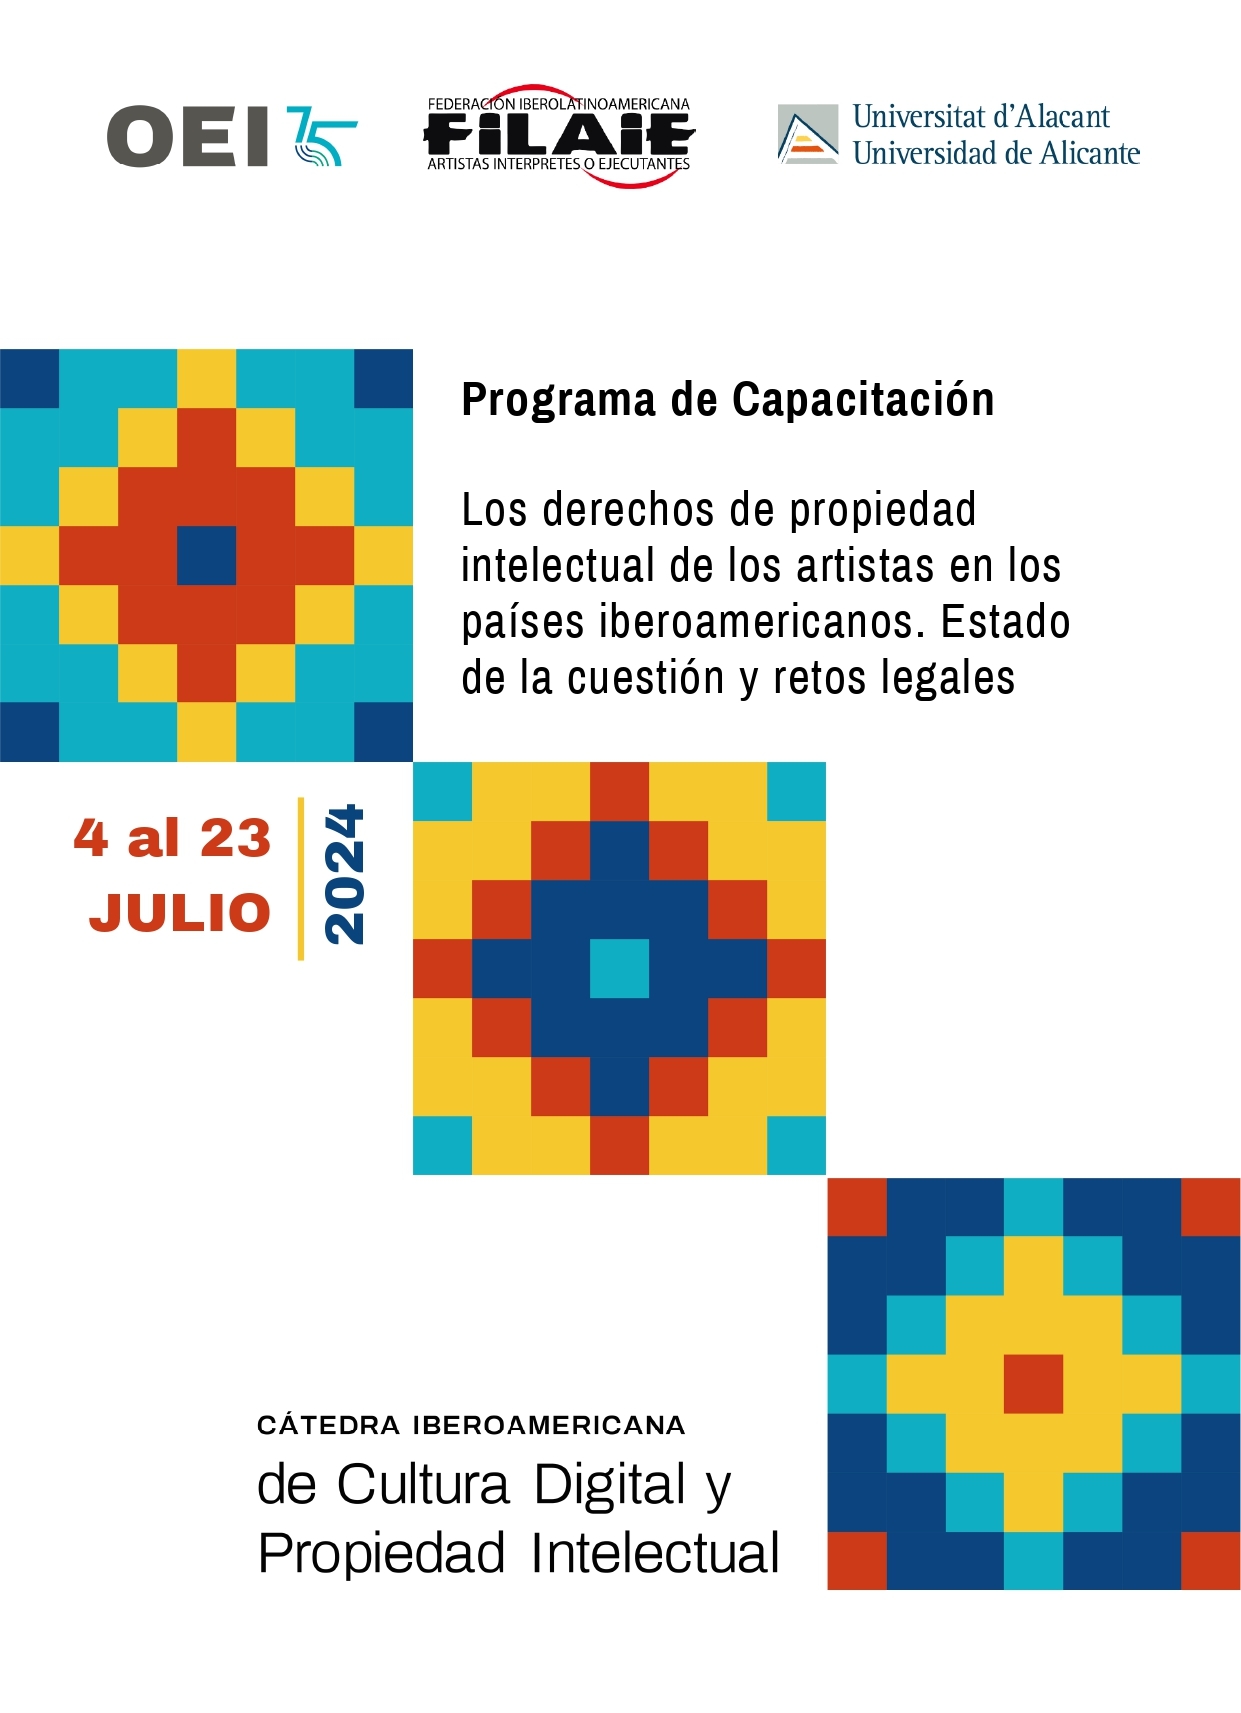 Los derechos de propiedad intelectual de los artistas en los países iberoamericanos: Estado de la cuestión y retos legales (Sesión 2)